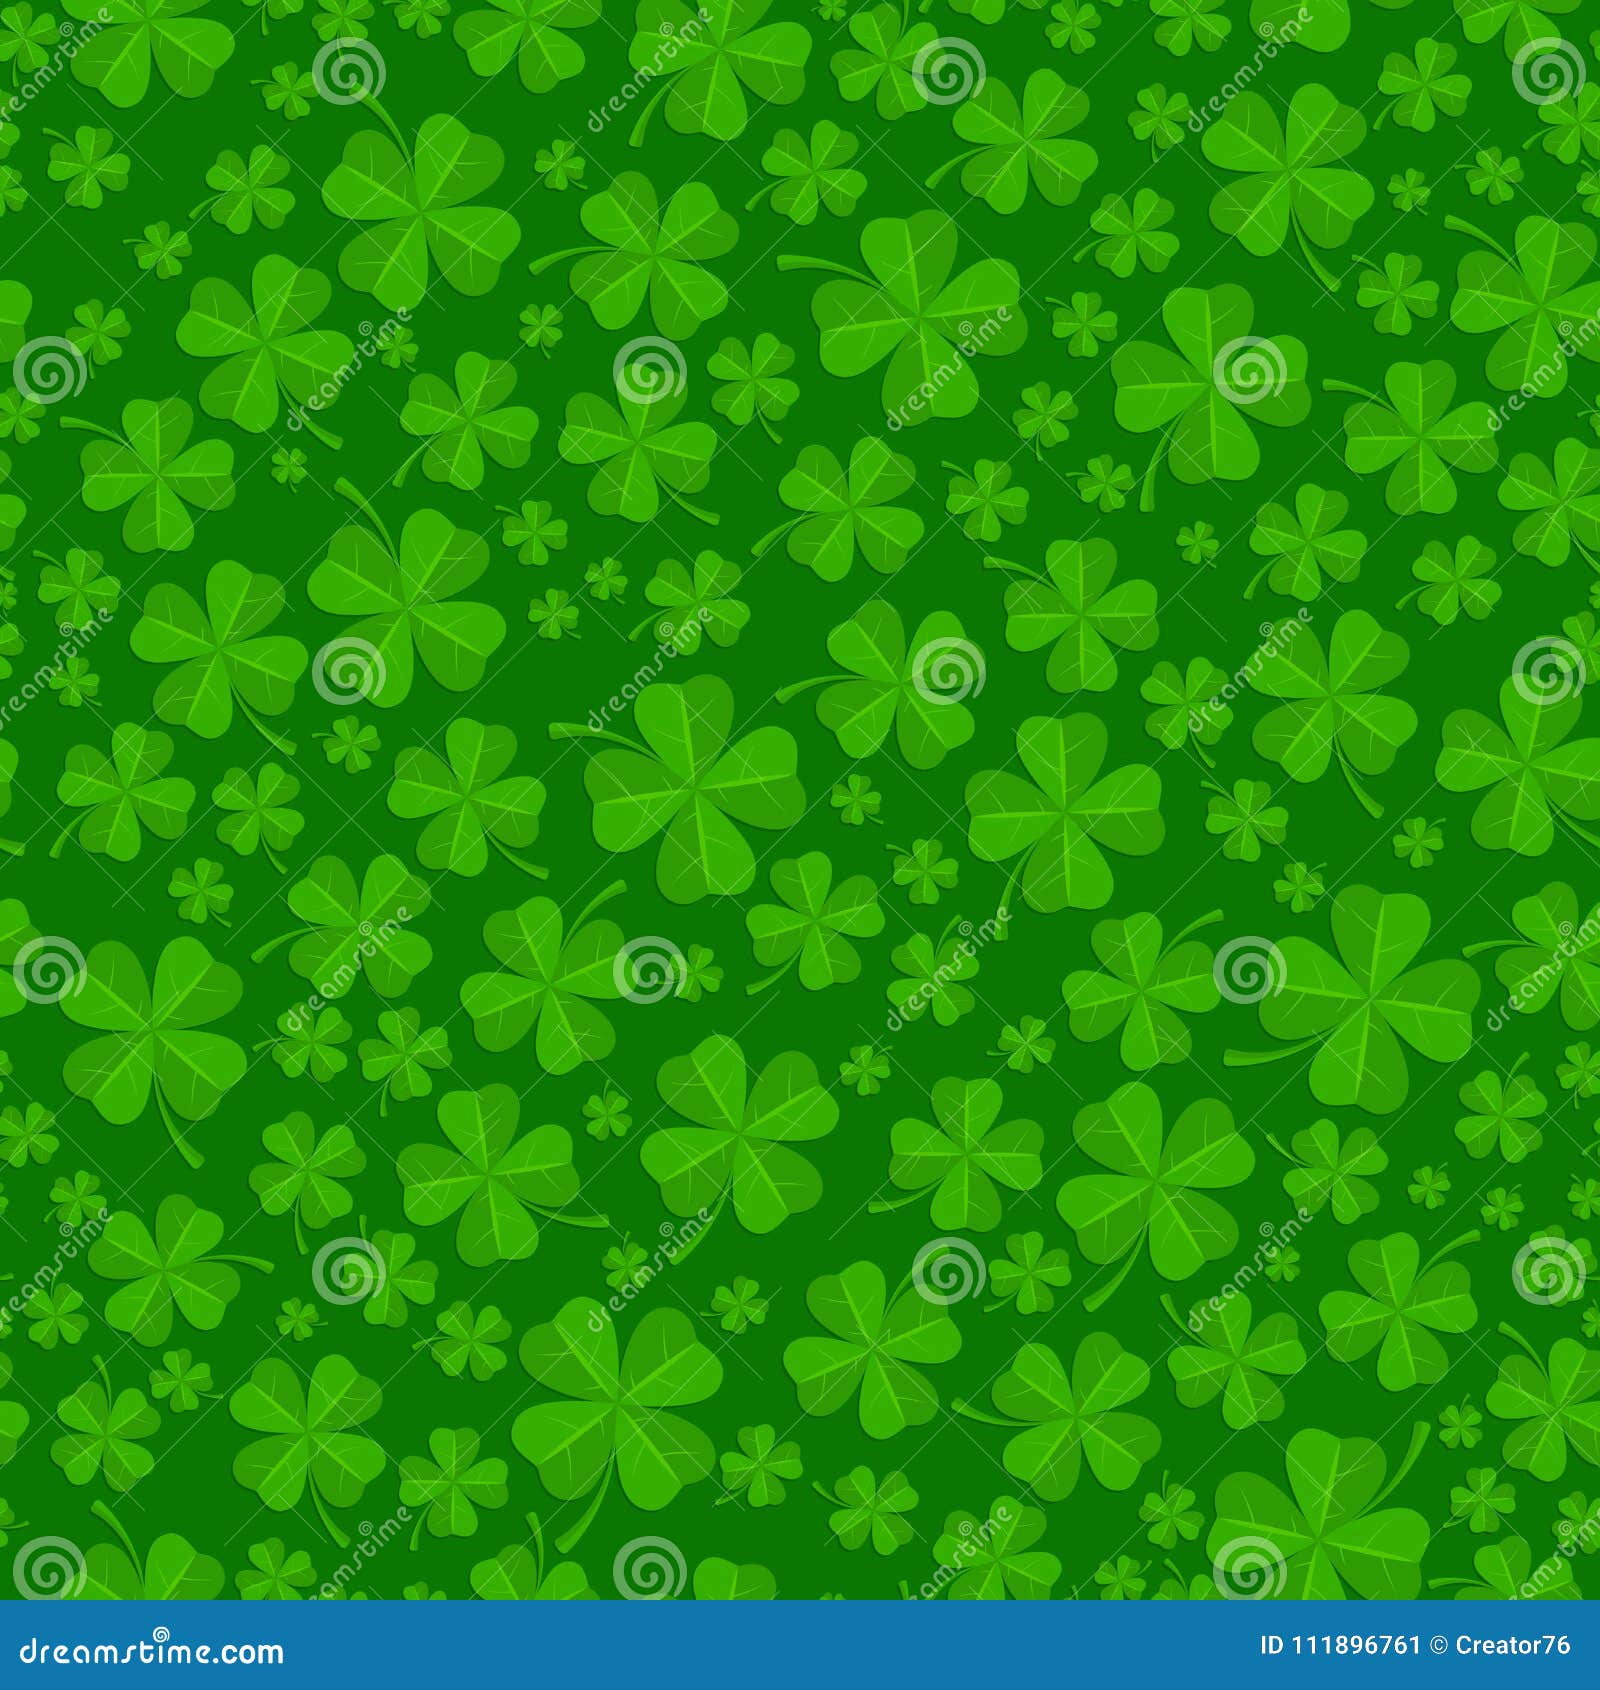 Ngày của những chiếc lá may mắn màu xanh lá cây đang đến gần. Với bức tranh hình nền ngày St Patricks, bạn sẽ thấy sự kết hợp hài hòa giữa màu xanh lá cây và những chiếc lá thể hiện sự may mắn và phúc lộc đang đến trước mắt bạn.